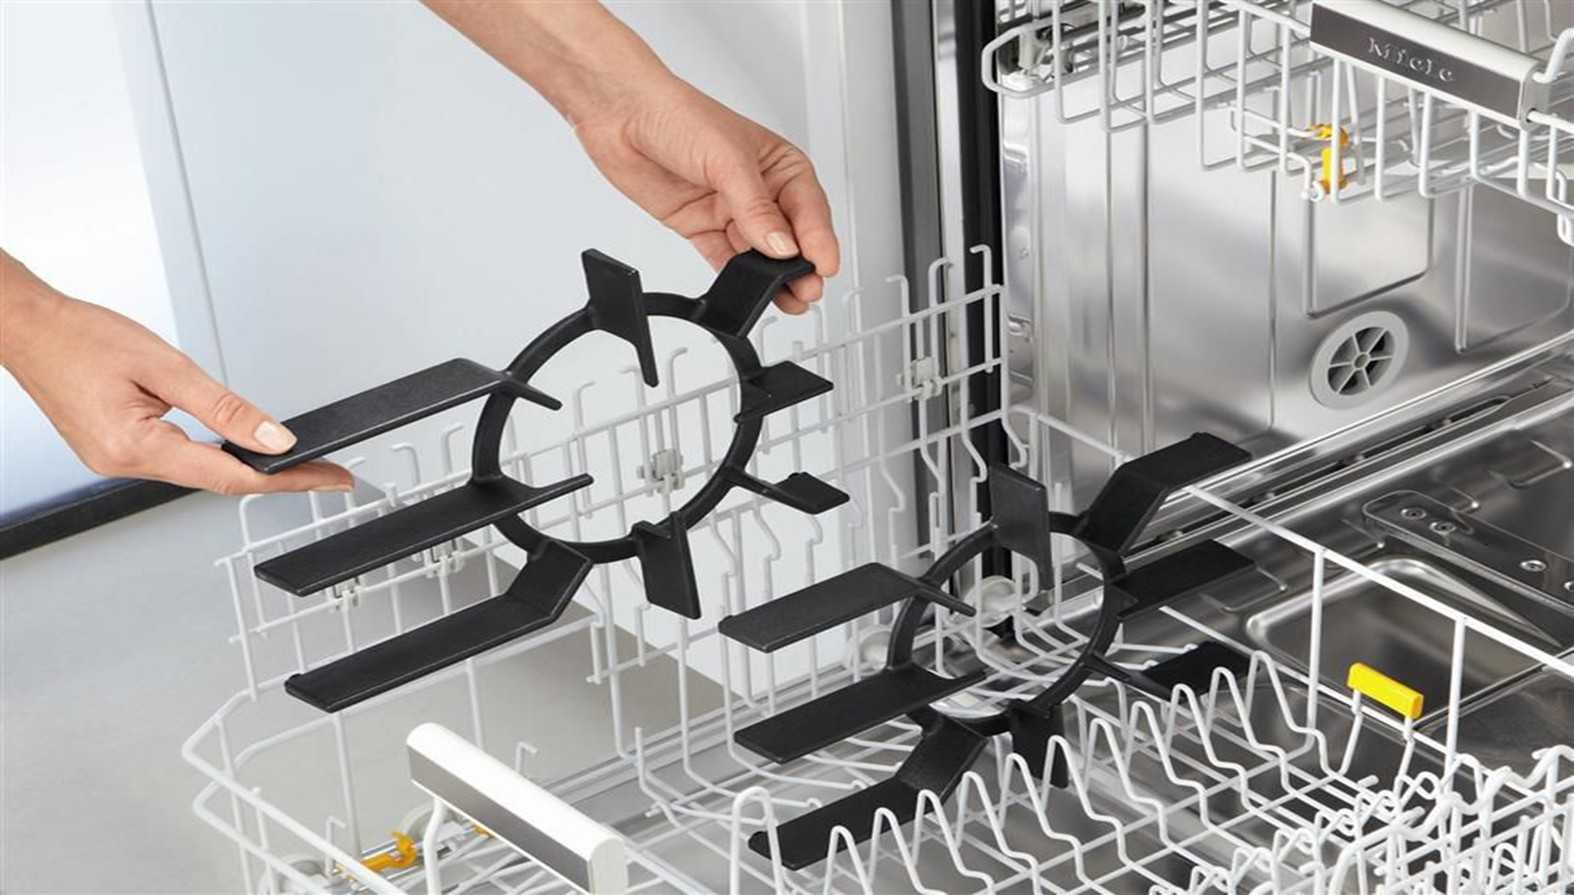 Как обработать новую алюминиевую посуду перед использованием. алюминиевая сковорода с антипригарным покрытием